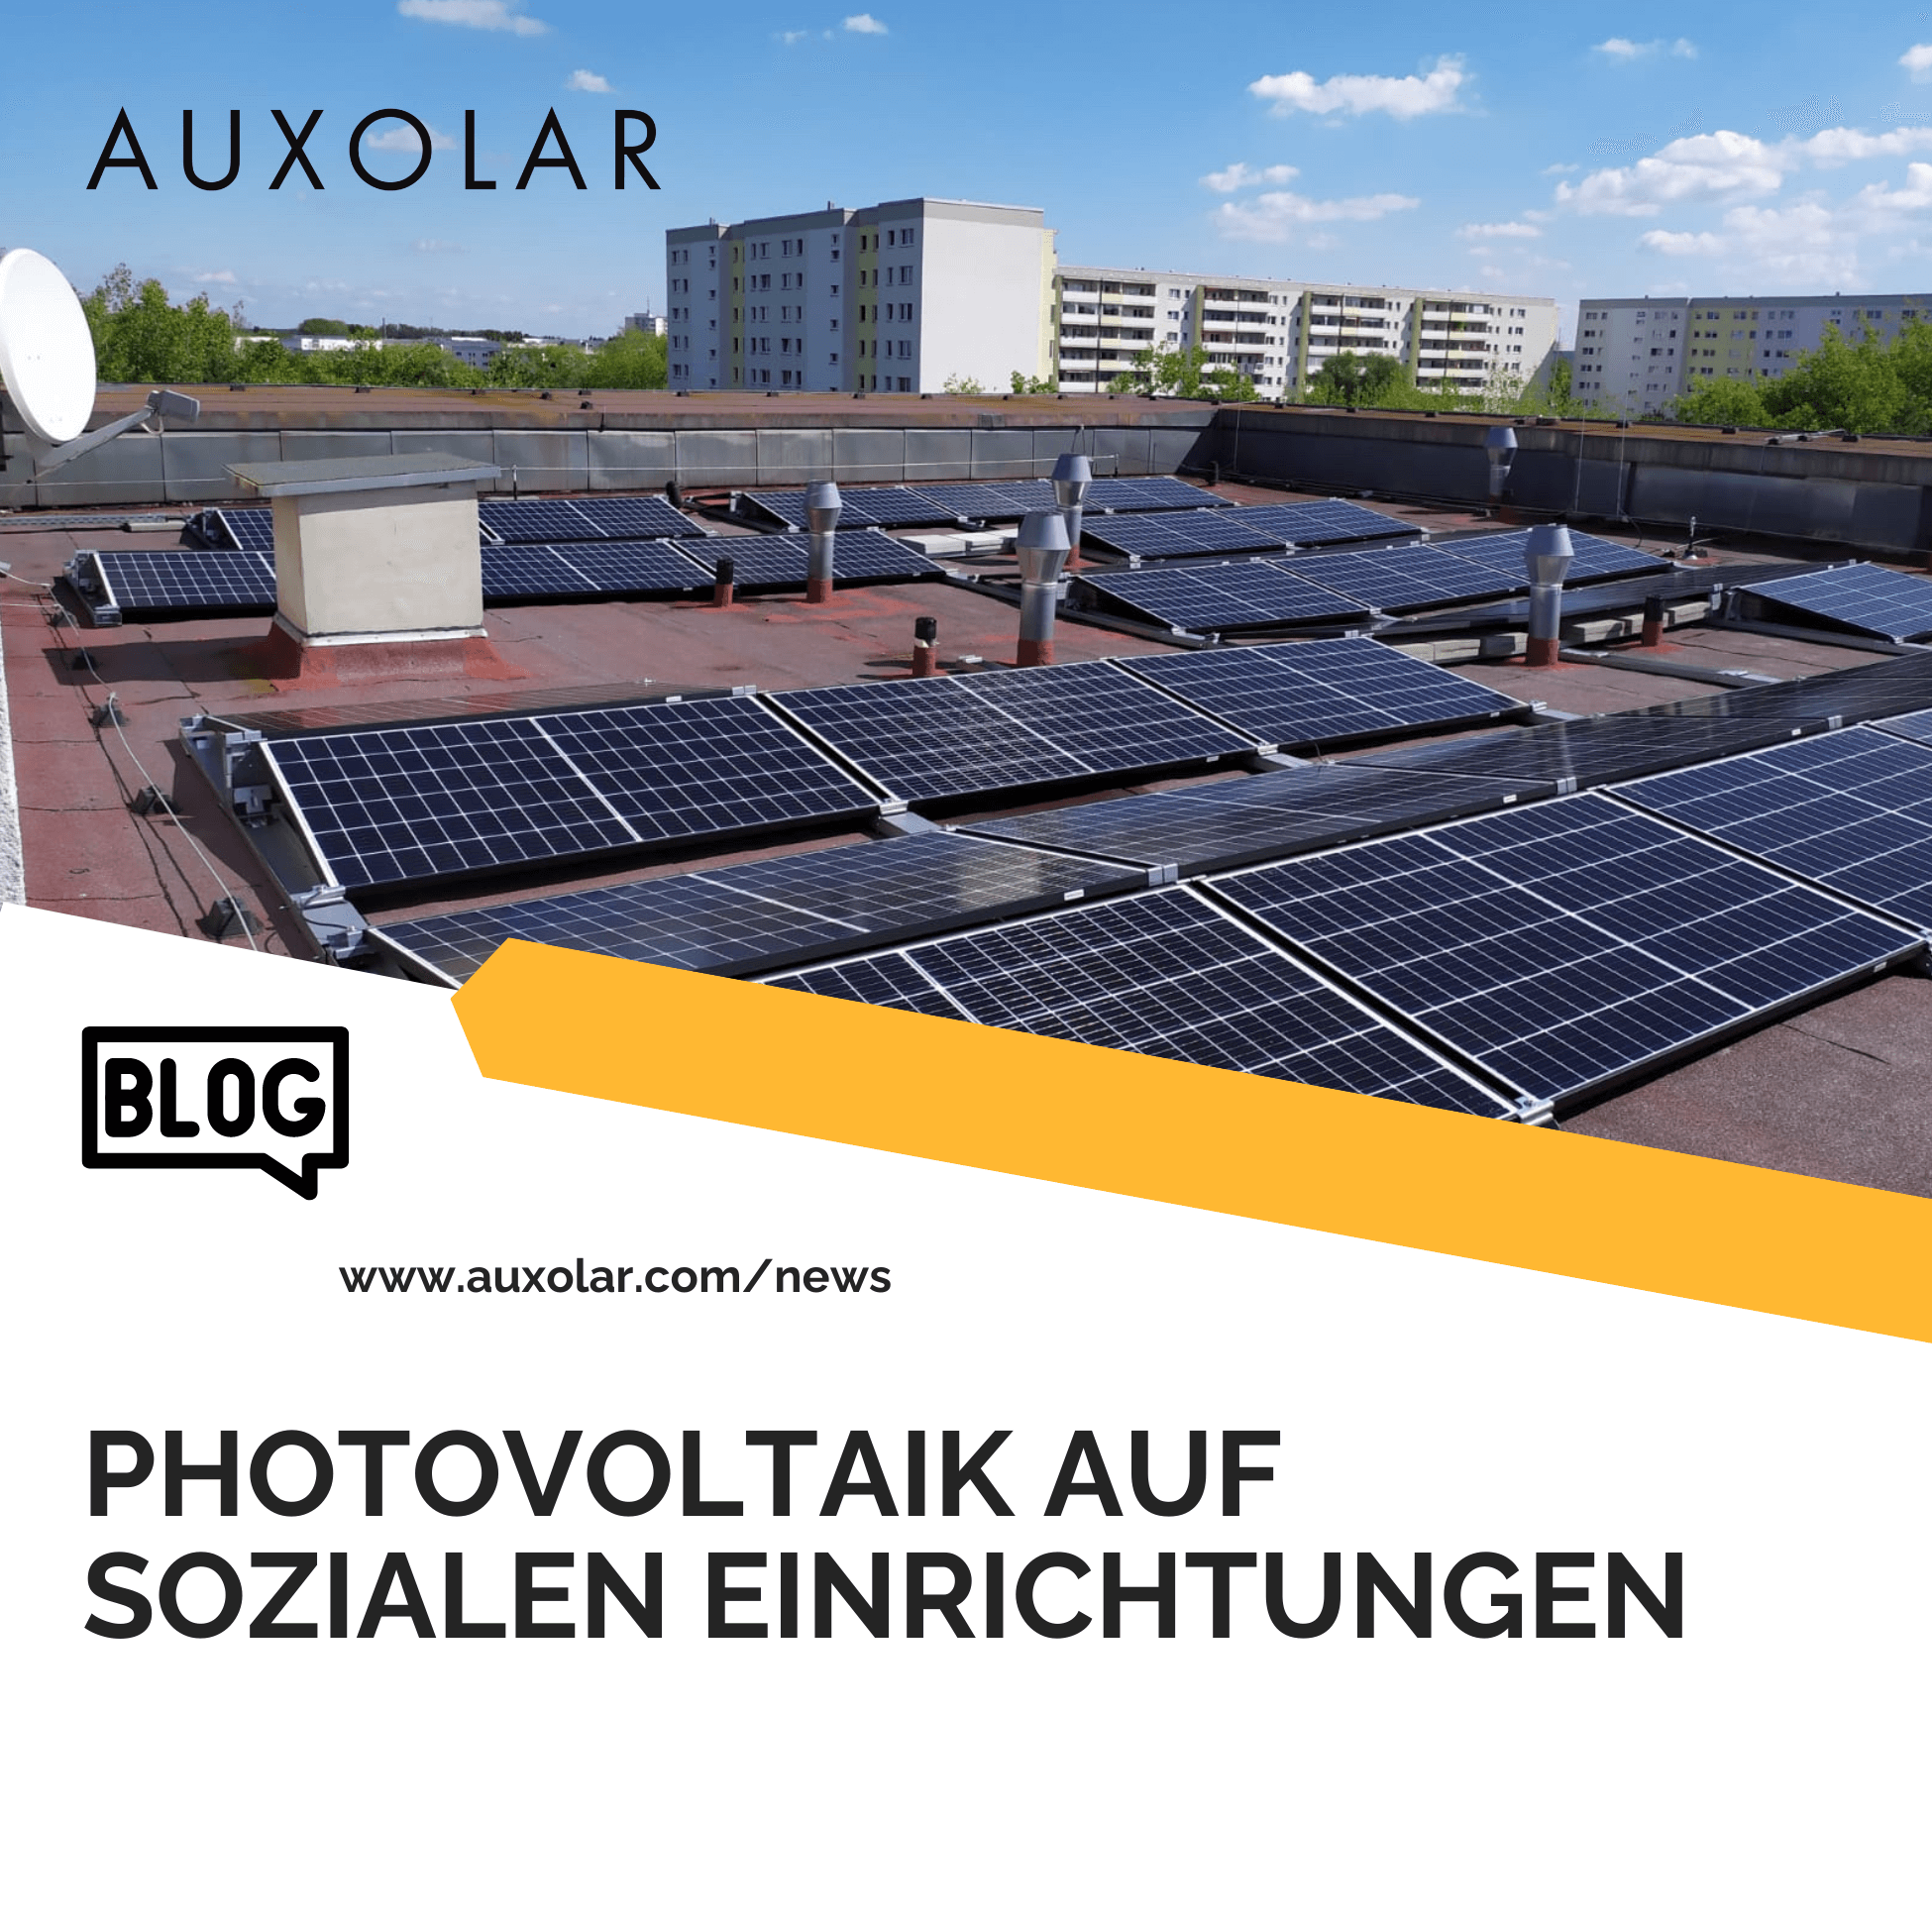 Mehr über den Artikel erfahren Gewerbliche Photovoltaikanlagen auf sozialen Einrichtungen